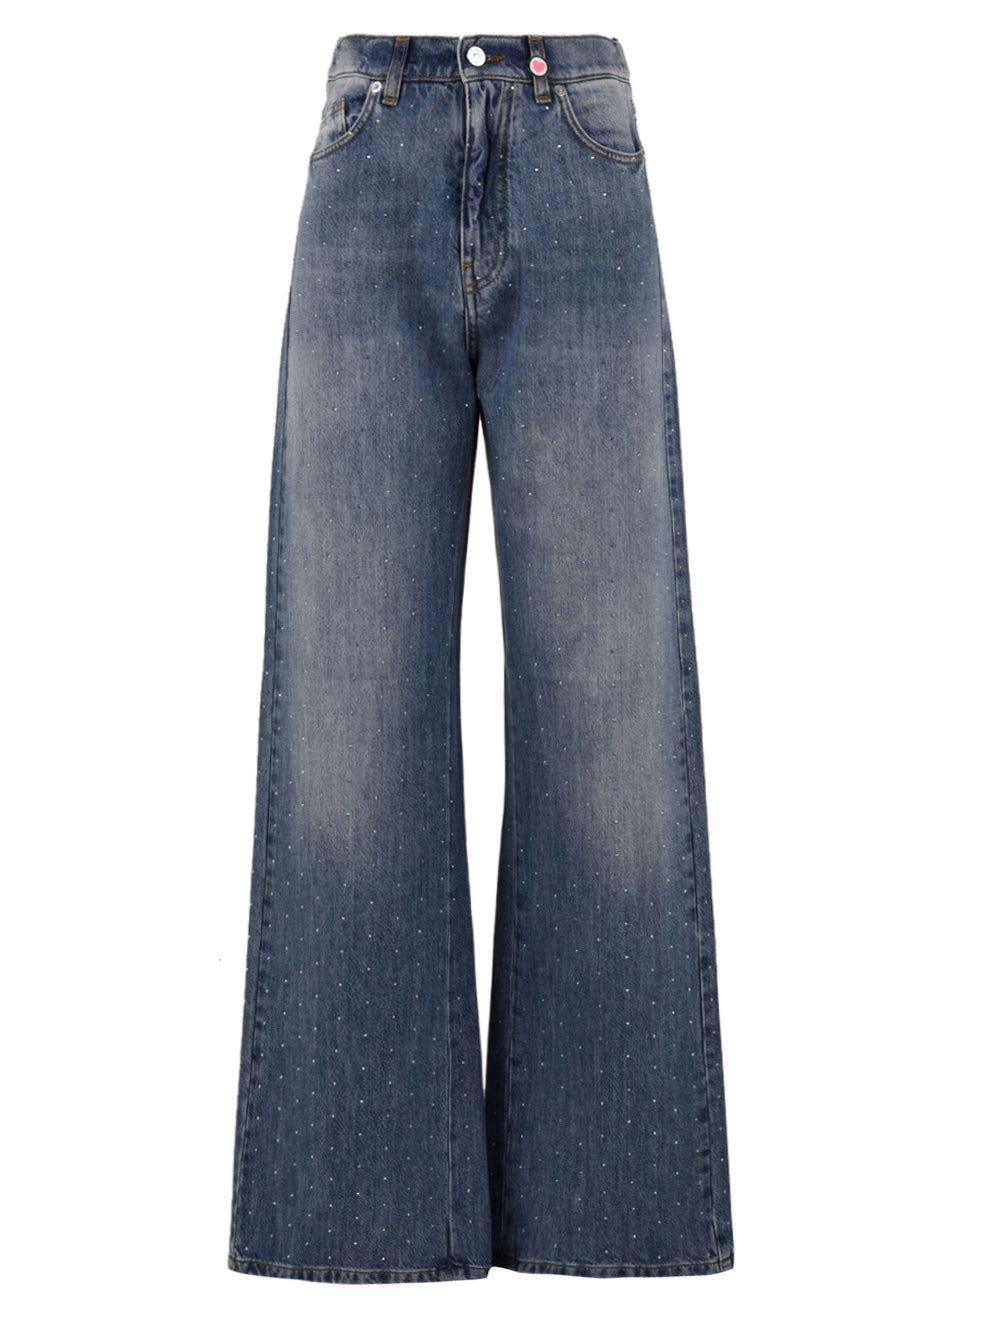 Immagine frontale del jeans  da donna modello Scarlett  Dio firmato I Love My Pants. Ha una gamba ampia e taglio dritto con applicazioni di strass di colore blu scuro ,ha due tasche frontali e chiusura con bottone e zip e in vita ha i passanti per la cintura.